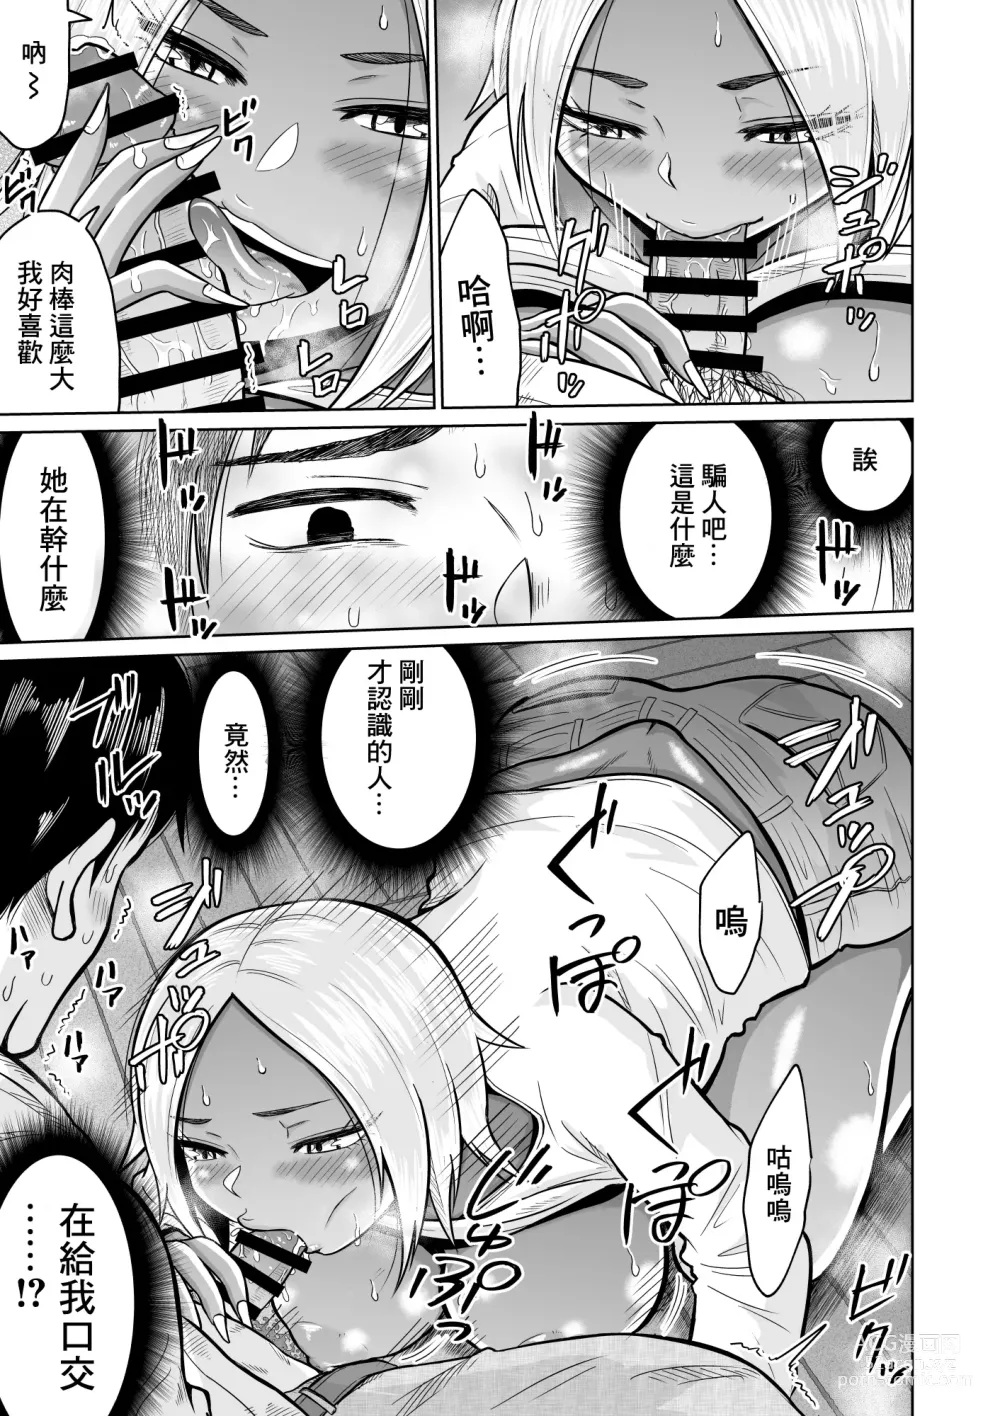 Page 25 of doujinshi Juken no Tame ni Tokyo ni Kita dake datta no ni